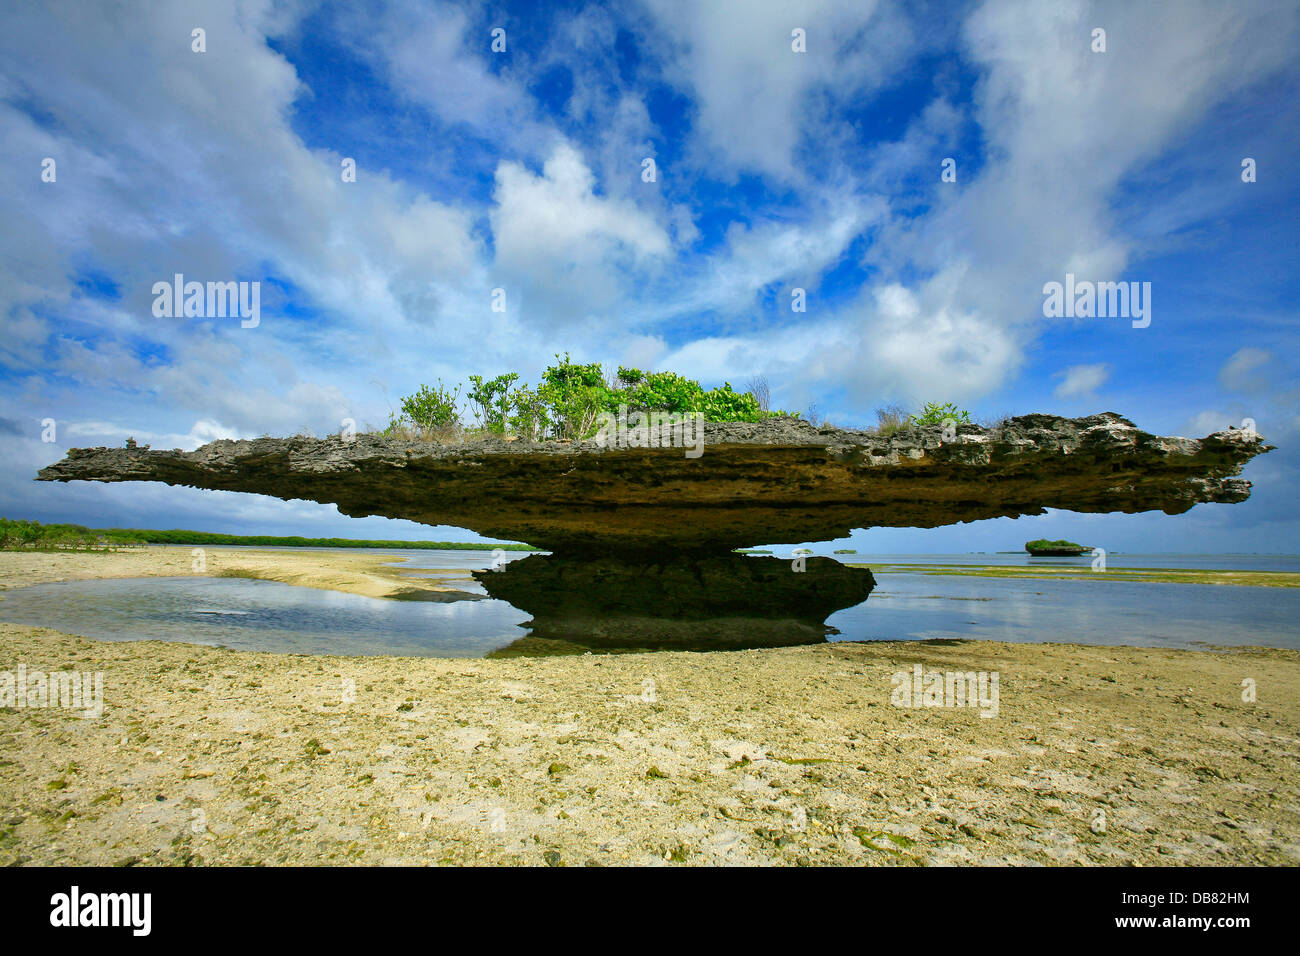 Paesi stranieri - Seychelles - Aldabra blue skies nuvole bianche rocce esposte formazione bassa marea champignon rock coral Foto Stock